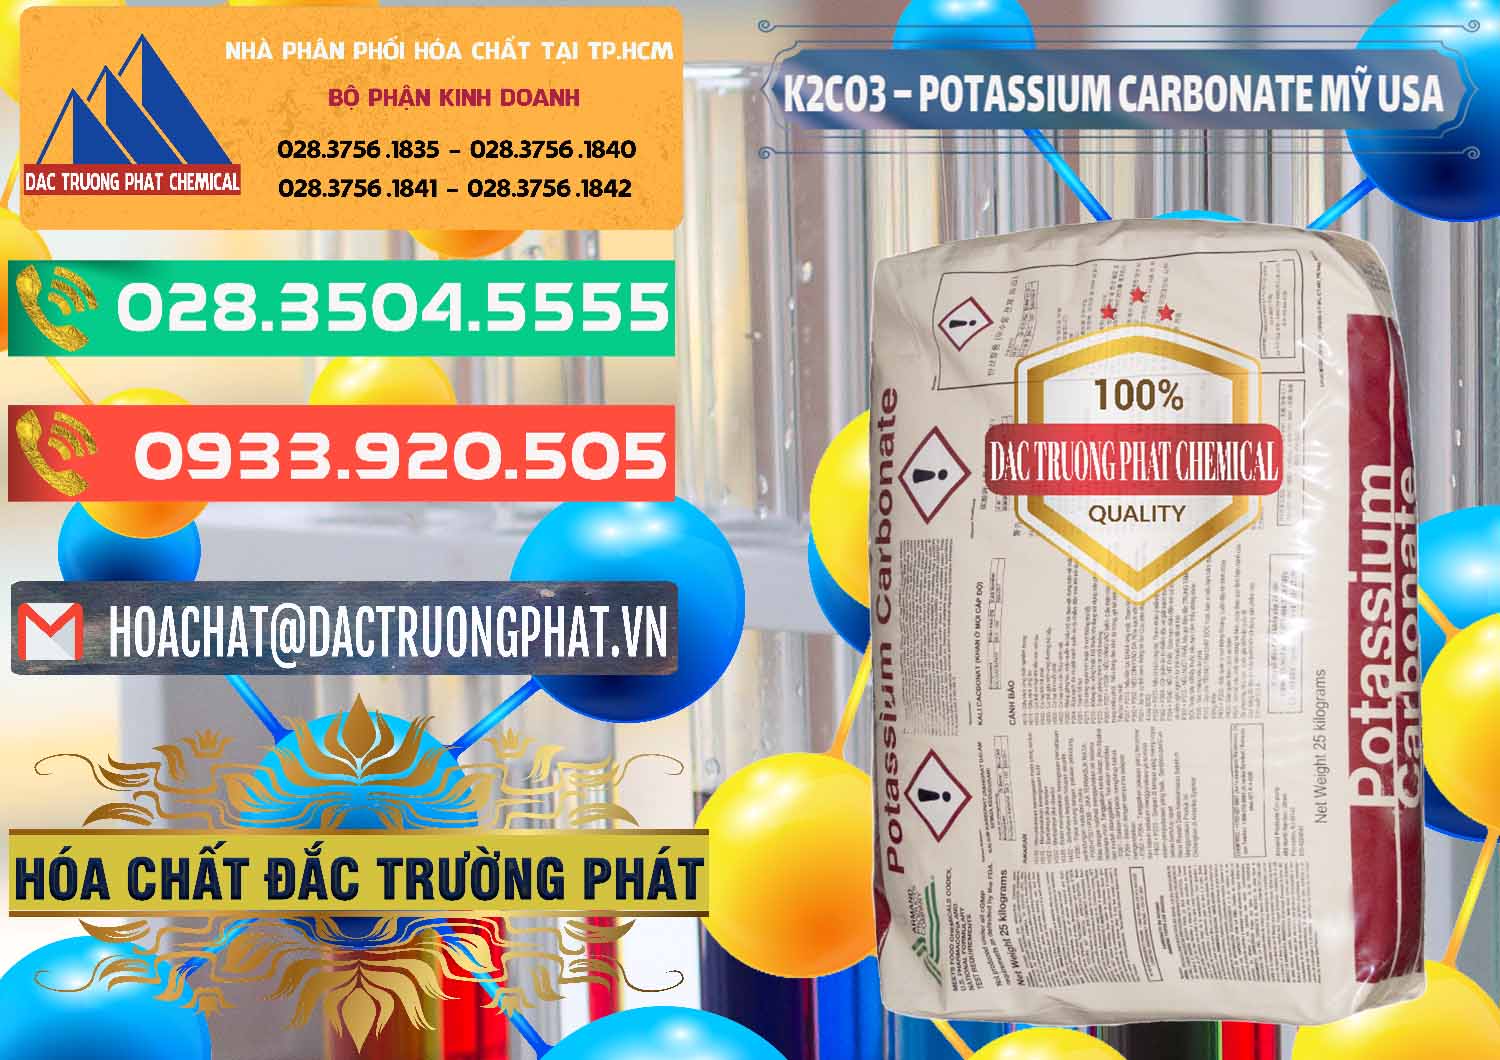 Kinh doanh & bán K2Co3 – Potassium Carbonate Mỹ USA - 0082 - Công ty cung cấp _ phân phối hóa chất tại TP.HCM - congtyhoachat.com.vn